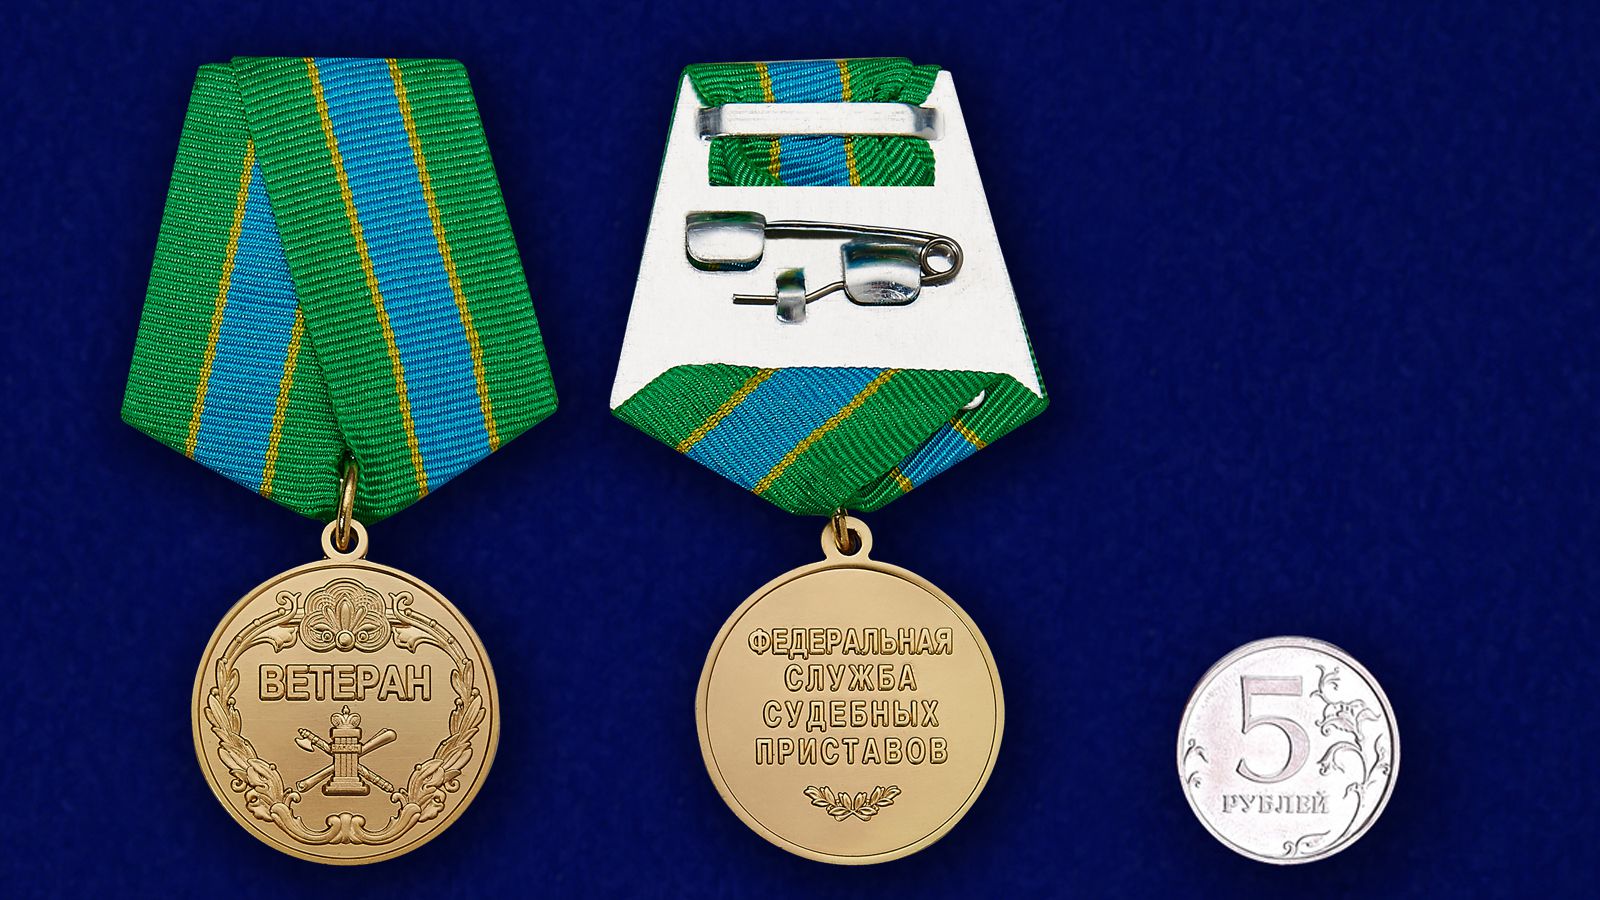  Медаль Ветеран ФССП (Федеральной службы судебных приставов) 